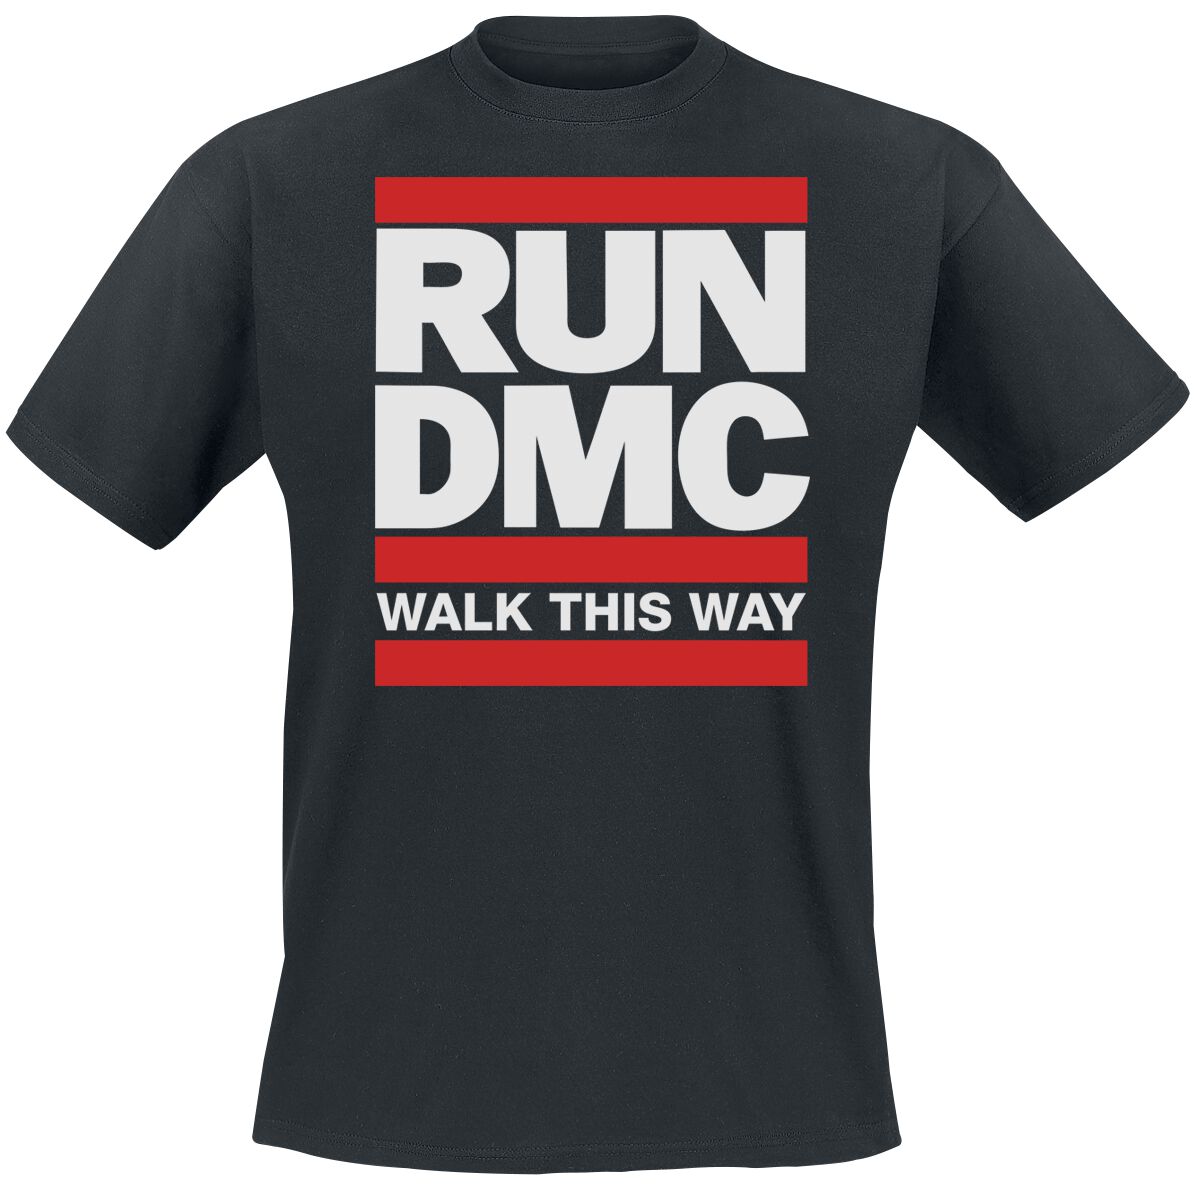 Run DMC T-Shirt - Walk This Way` - S bis 3XL - für Männer - Größe XXL - schwarz  - Lizenziertes Merchandise!